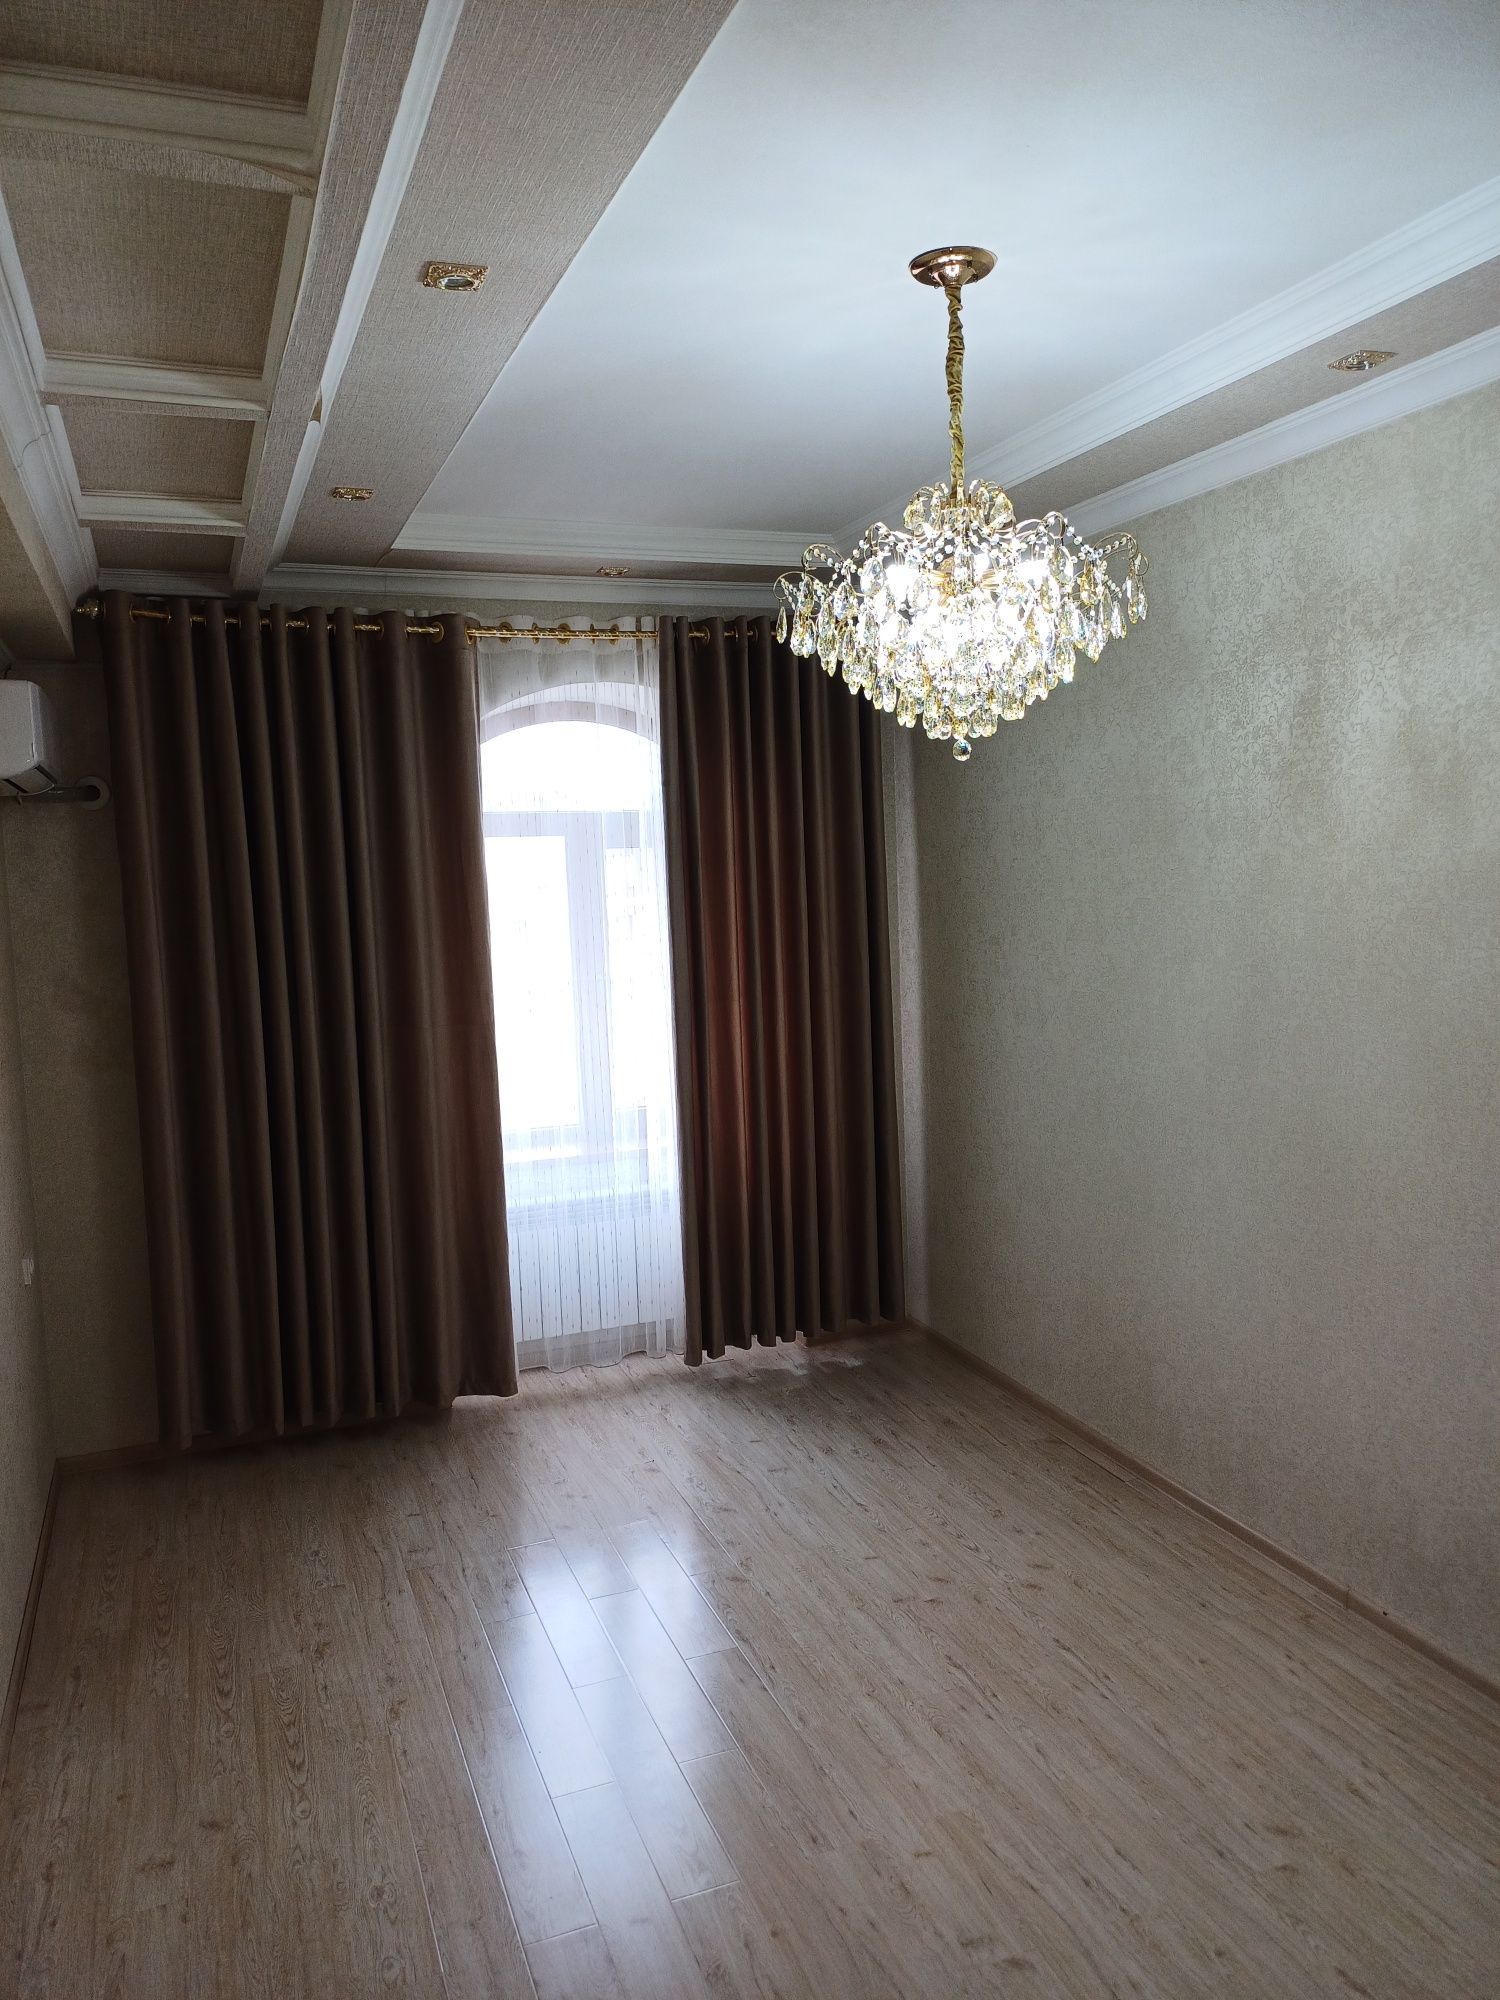 Продаётся 3-х комнатная квартира на улице Паркентская.